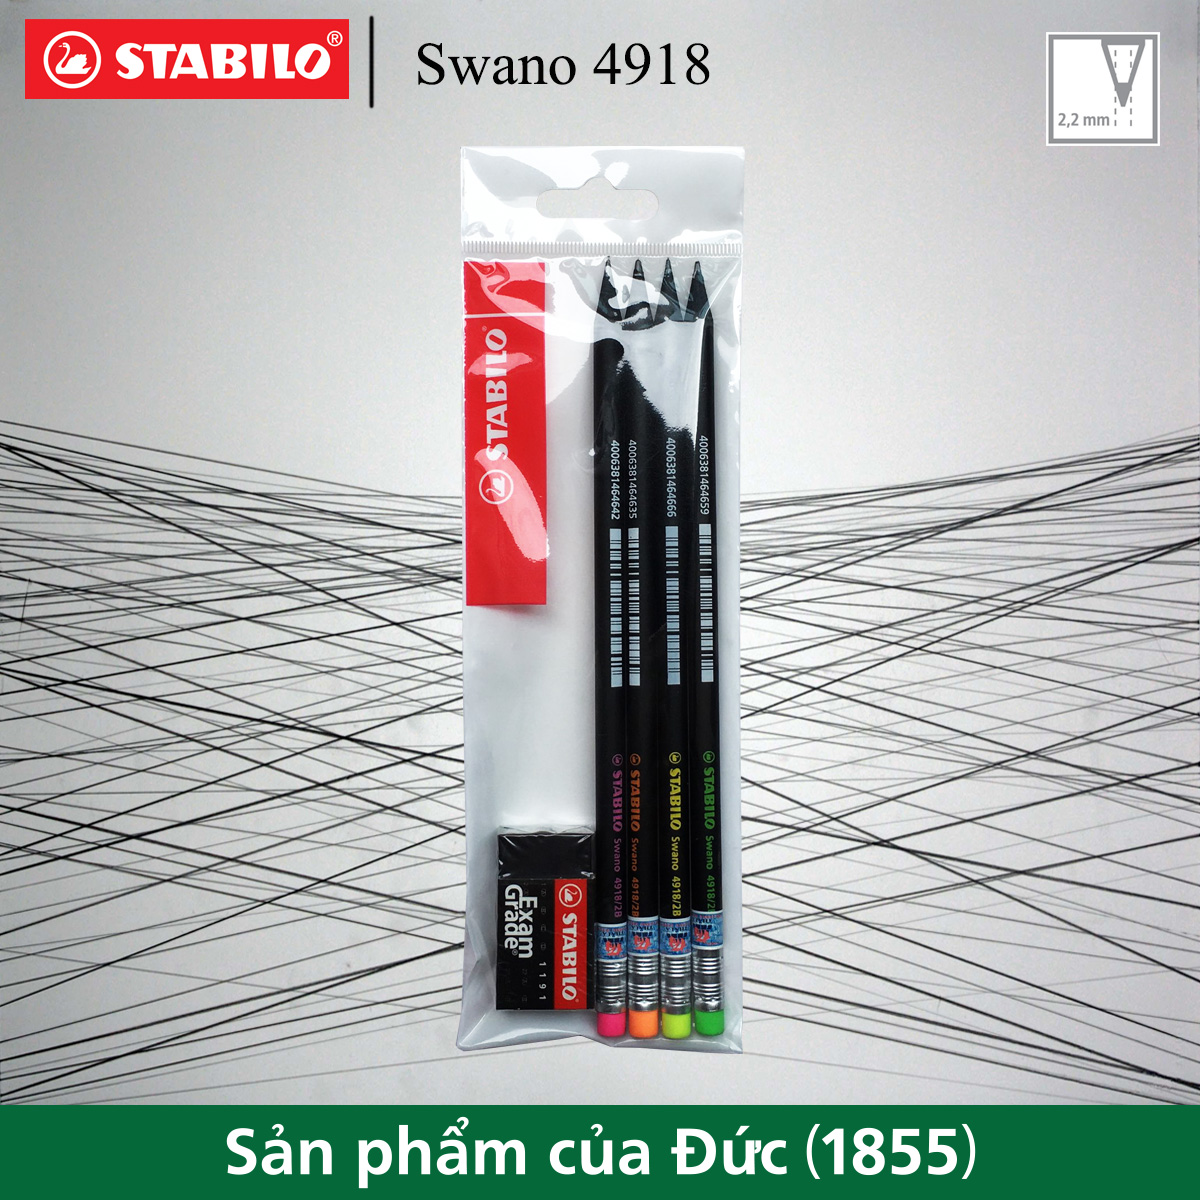 Bộ 4 bút chì gỗ STABILO Swano 2B 4918 (thân đen, đầu tẩy màu)